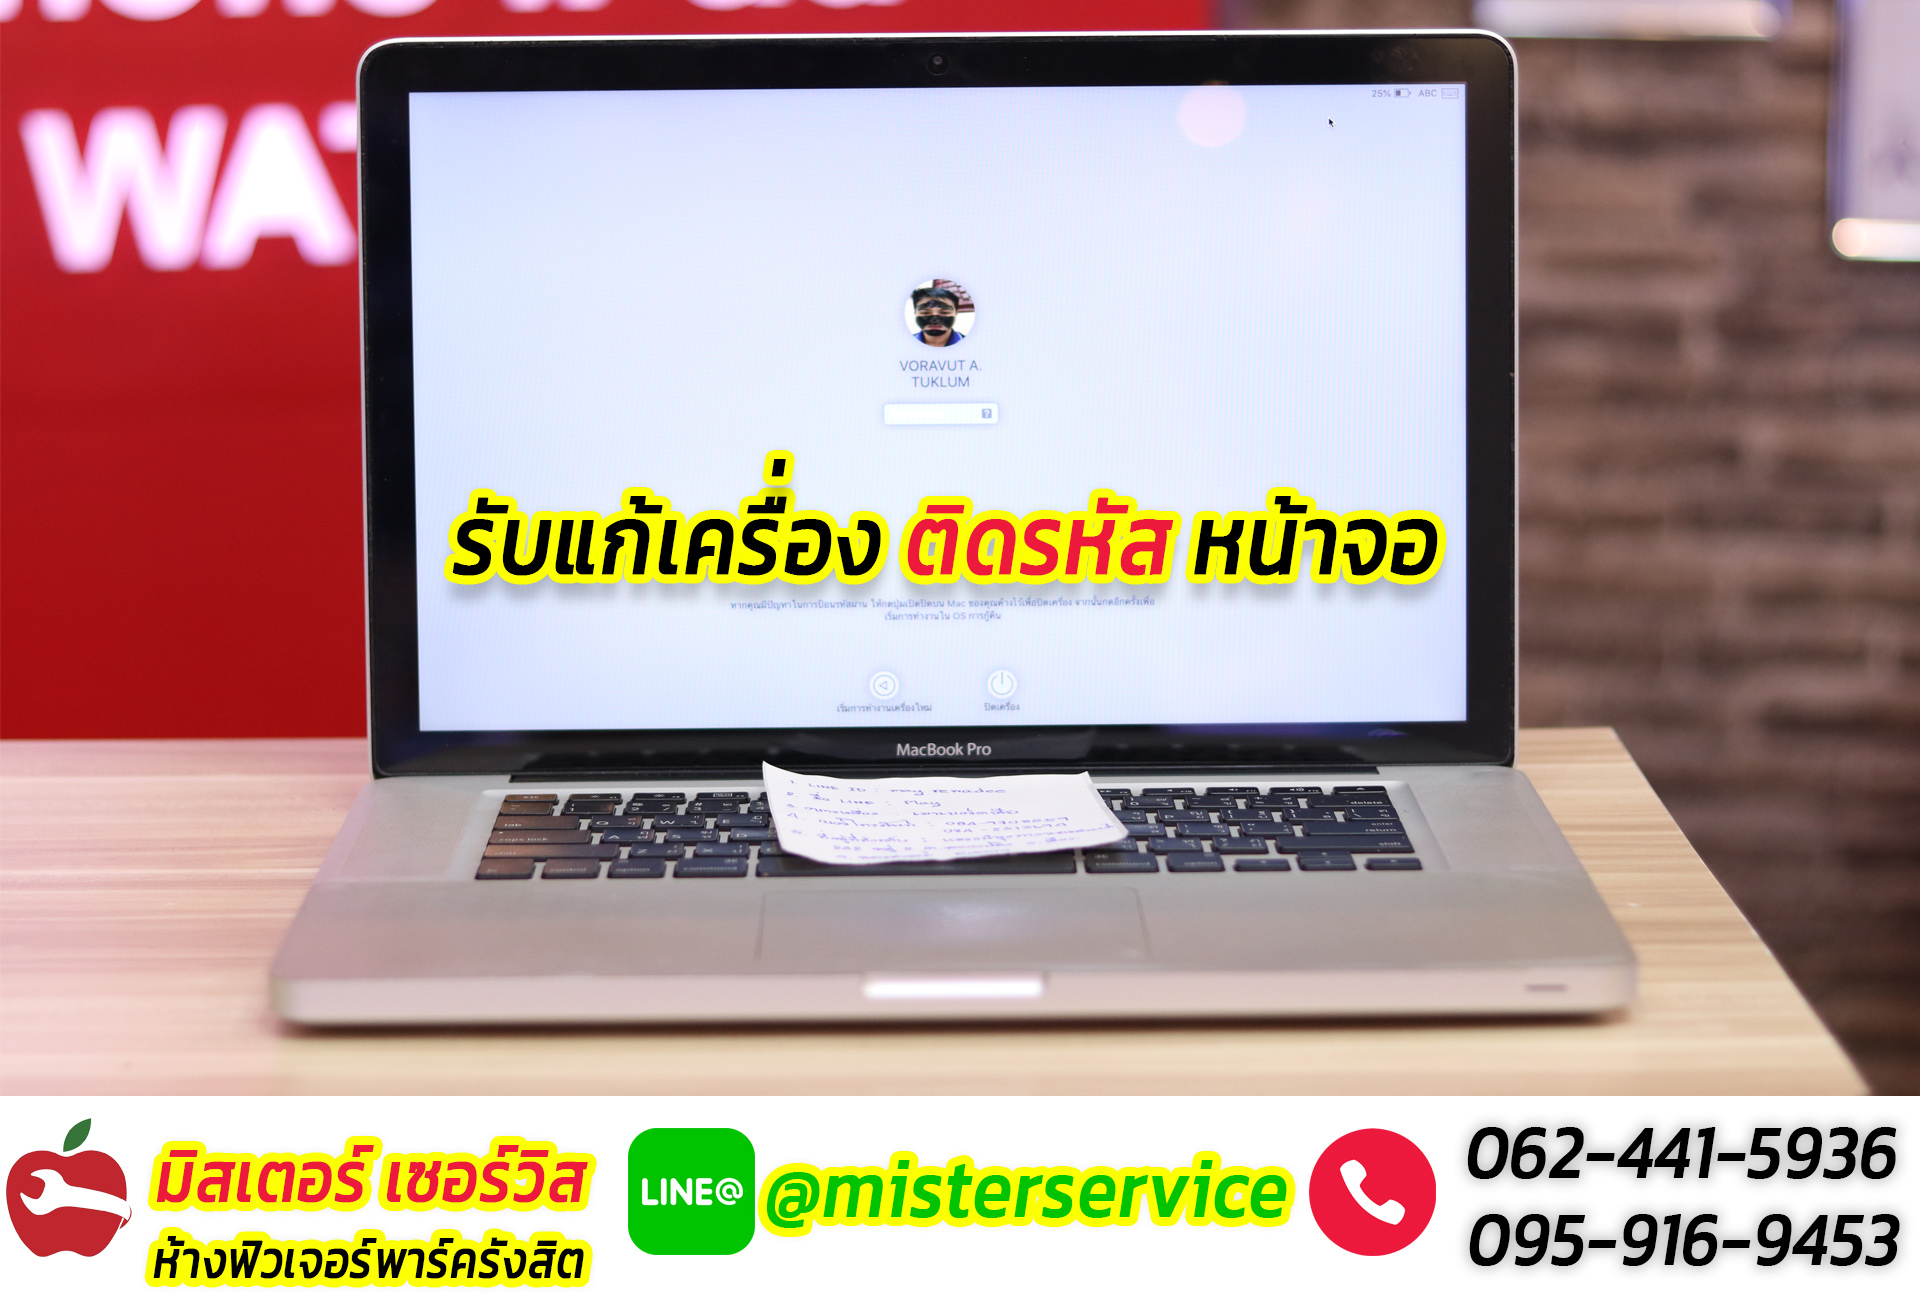 ซ่อม macbook เมืองทองธานี ปากเกร็ด นนทบุรี